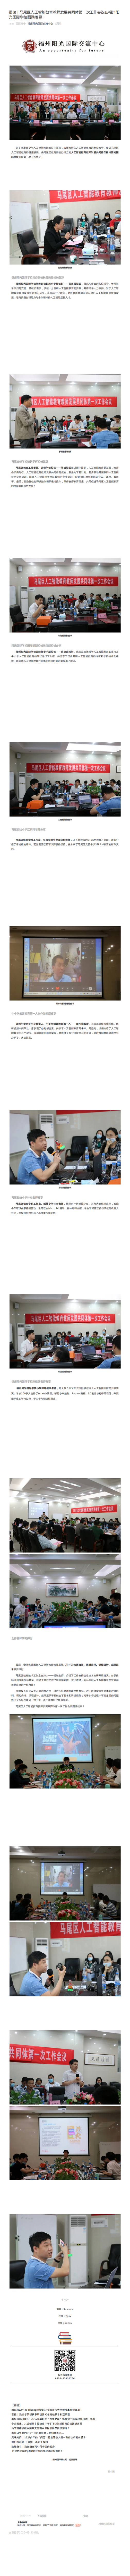 重磅 _ 马尾区人工智能教育教师发展共同体第一次工作会议在福州阳光国际学校圆满落幕！_0.png